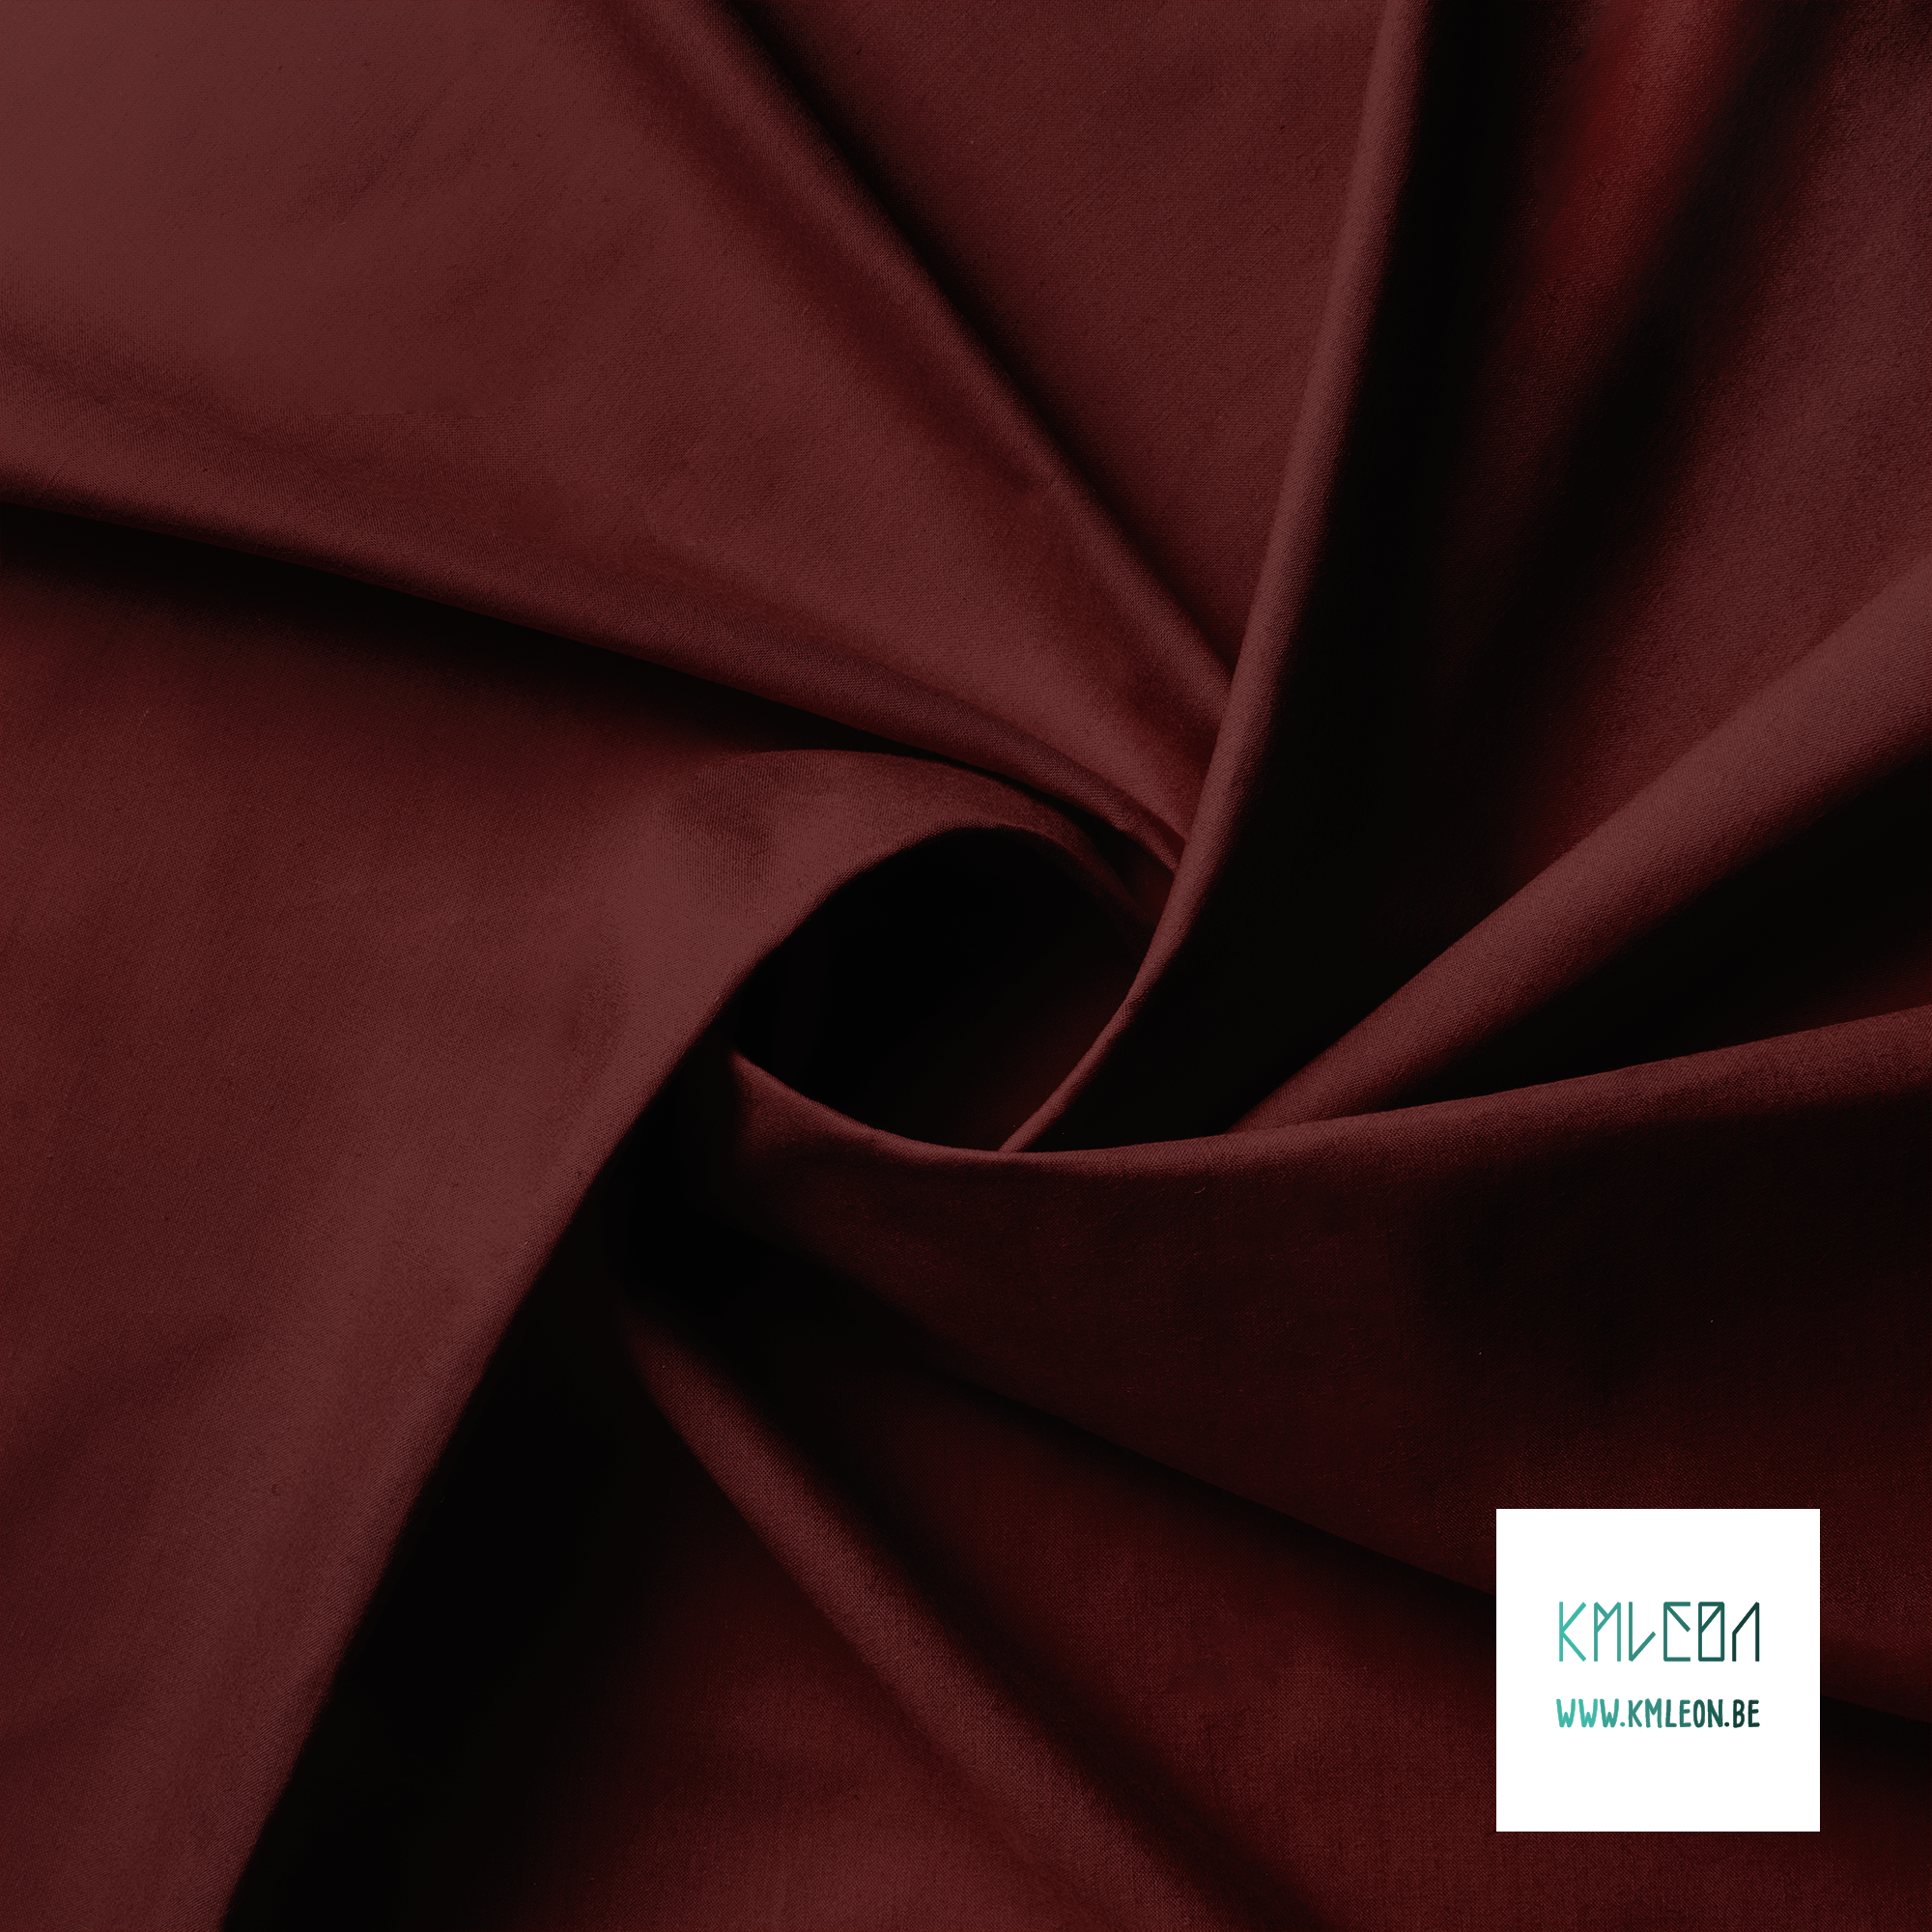 Solid dark maroon fabric